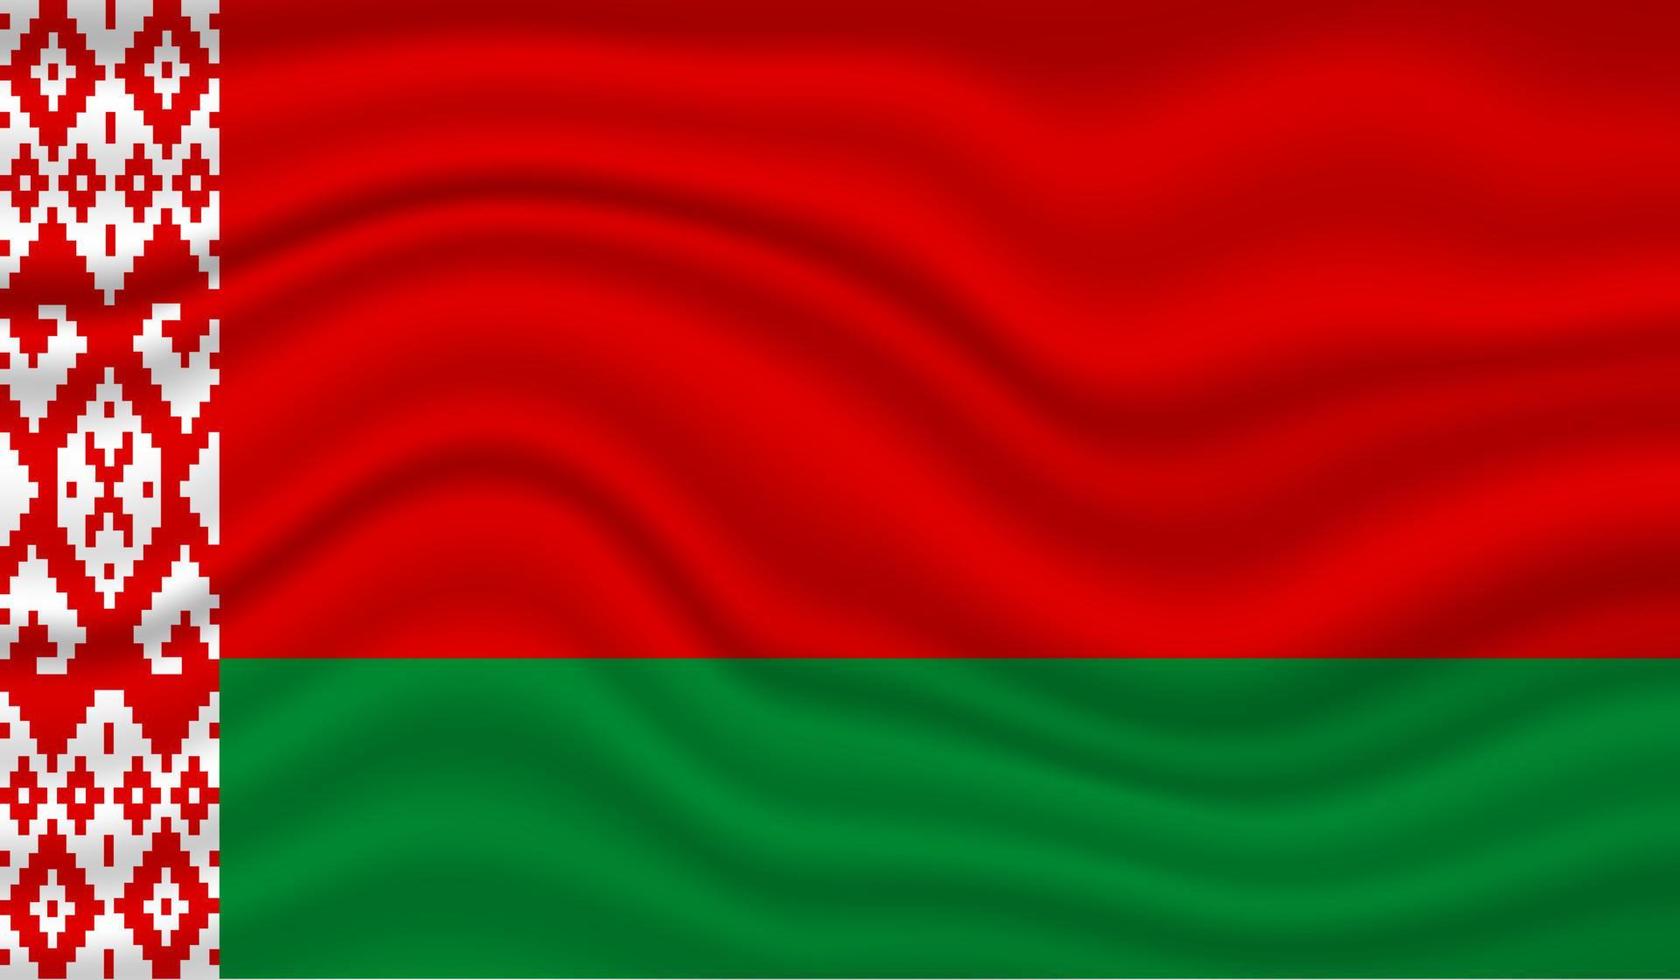 Wit-Rusland nationale vlag vector ontwerp. vlag van wit-rusland 3d zwaaien achtergrond vectorillustratie